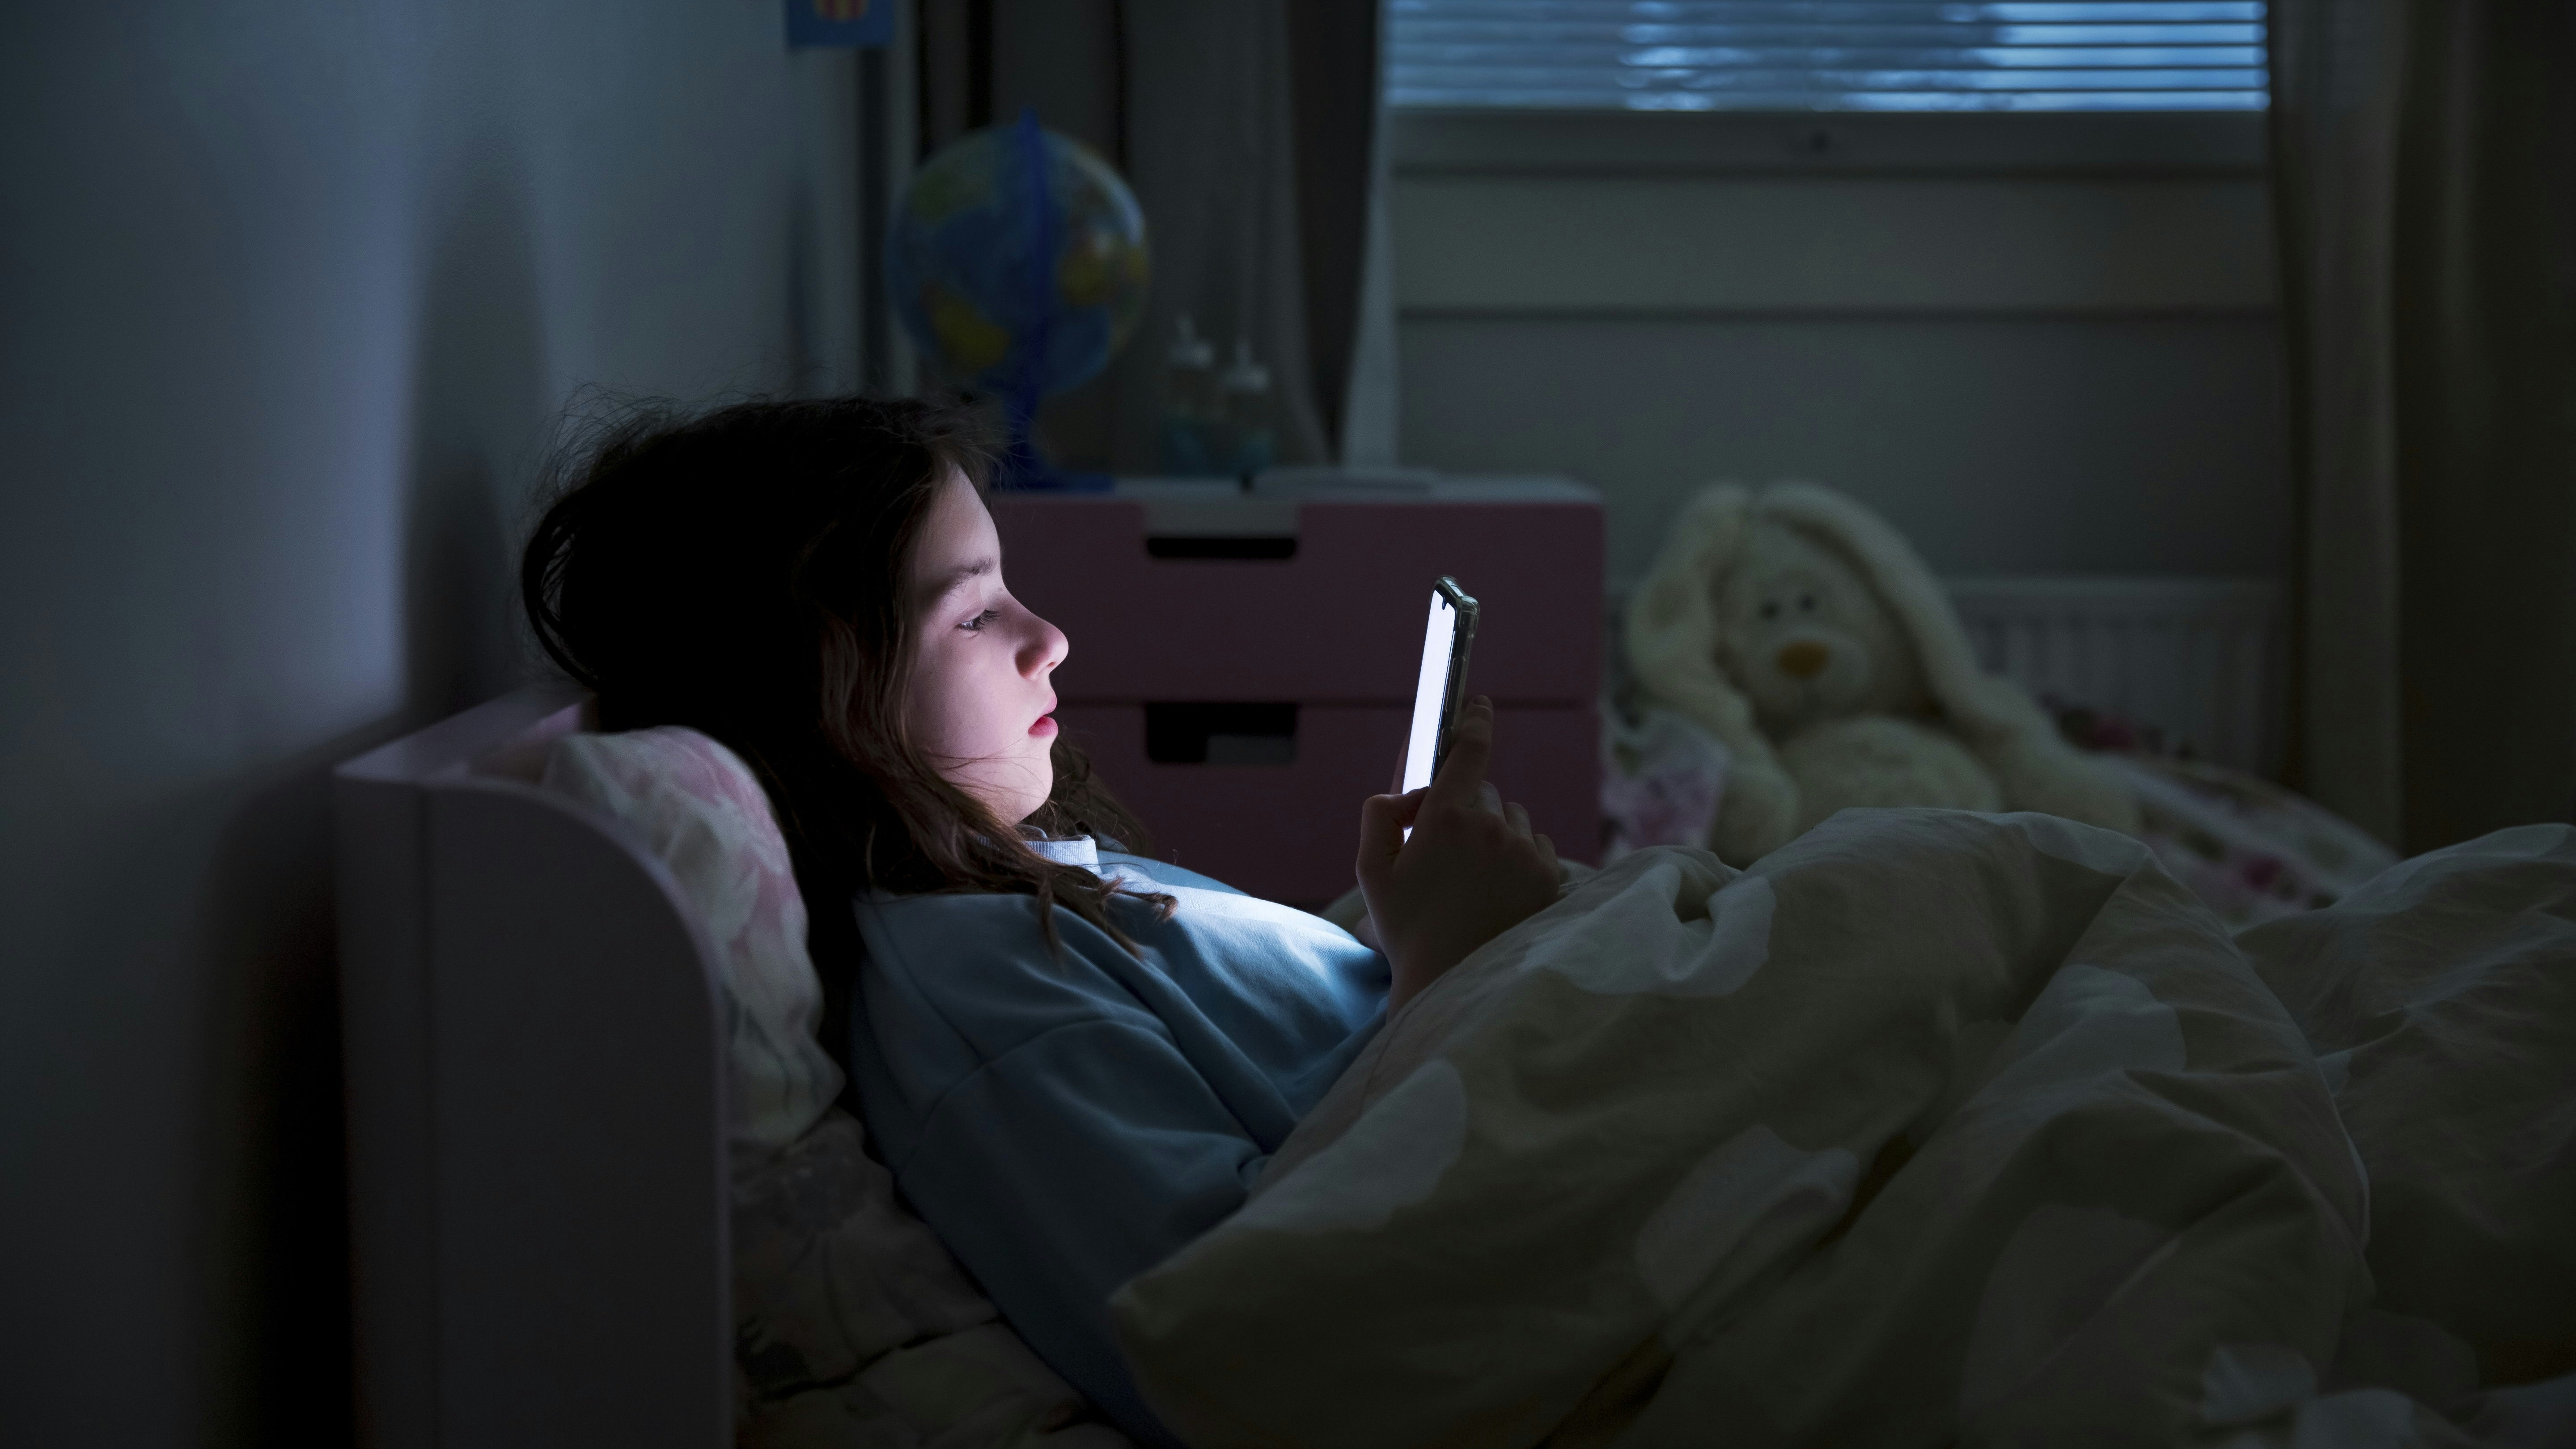 børns skærmforbrug, pige ligger i sengen med mobil